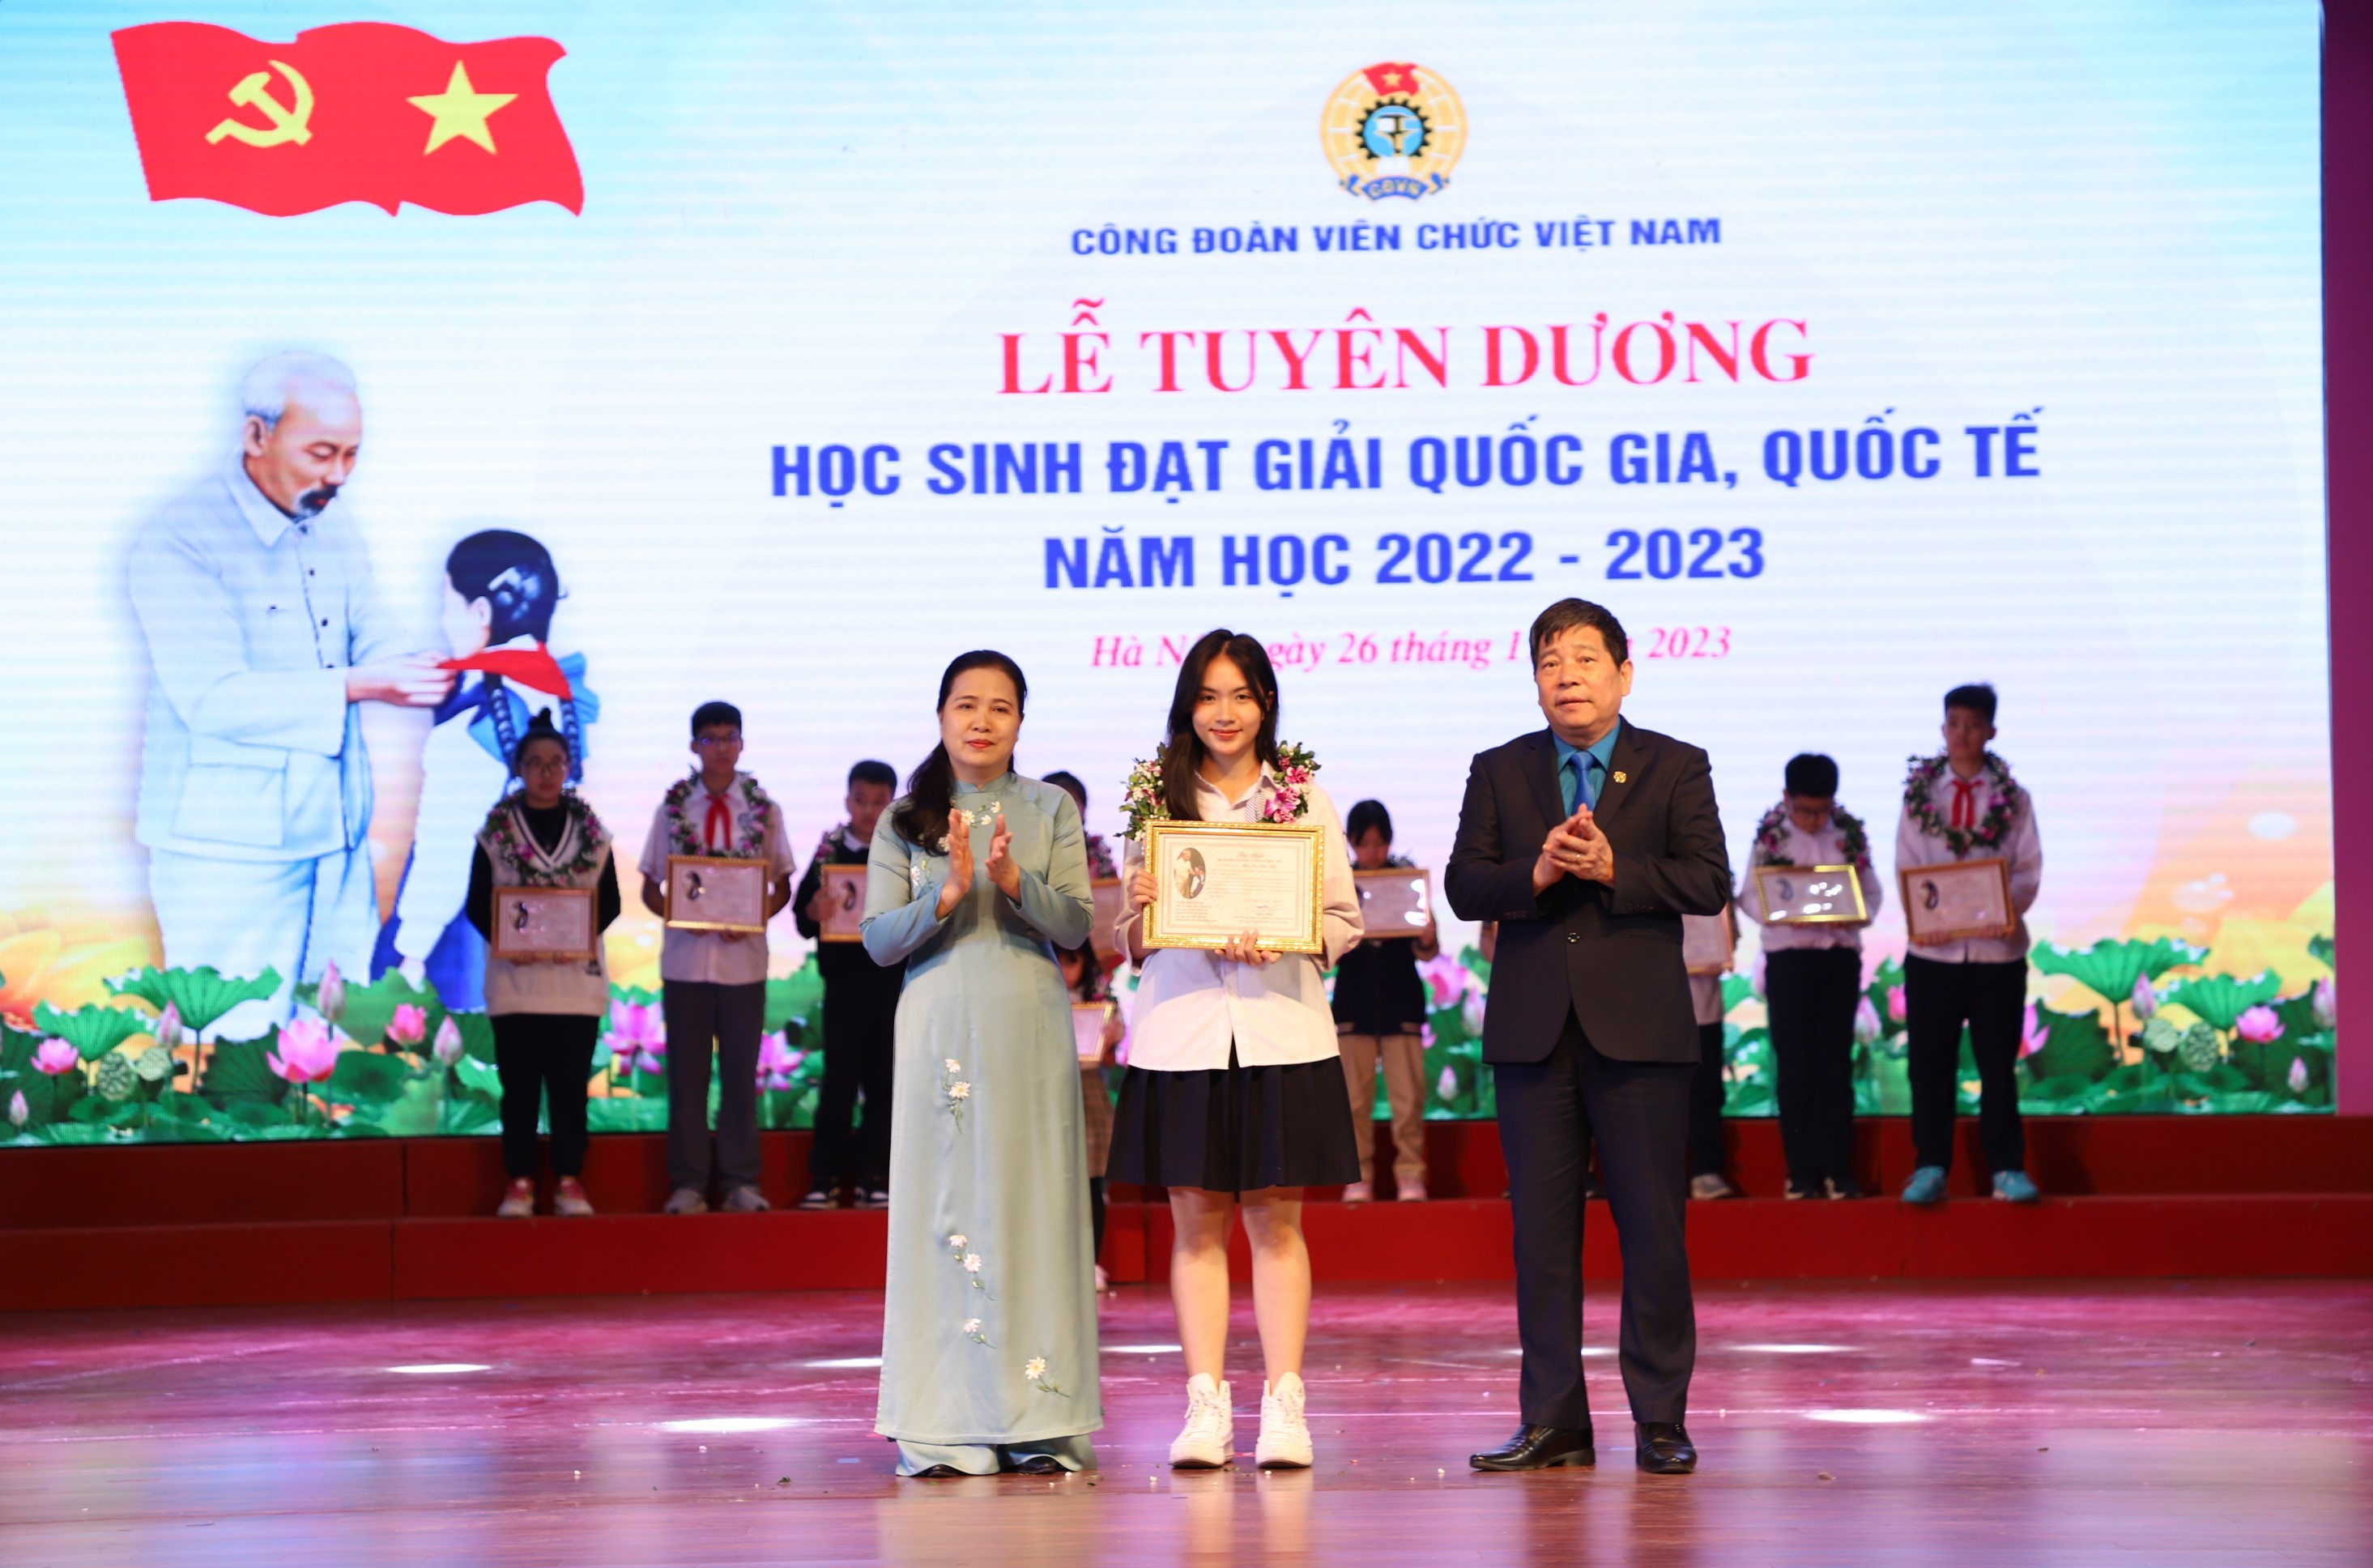 Công đoàn Viên chức Việt Nam tuyên dương học sinh đạt giải quốc gia, quốc tế năm học 2022 - 2023